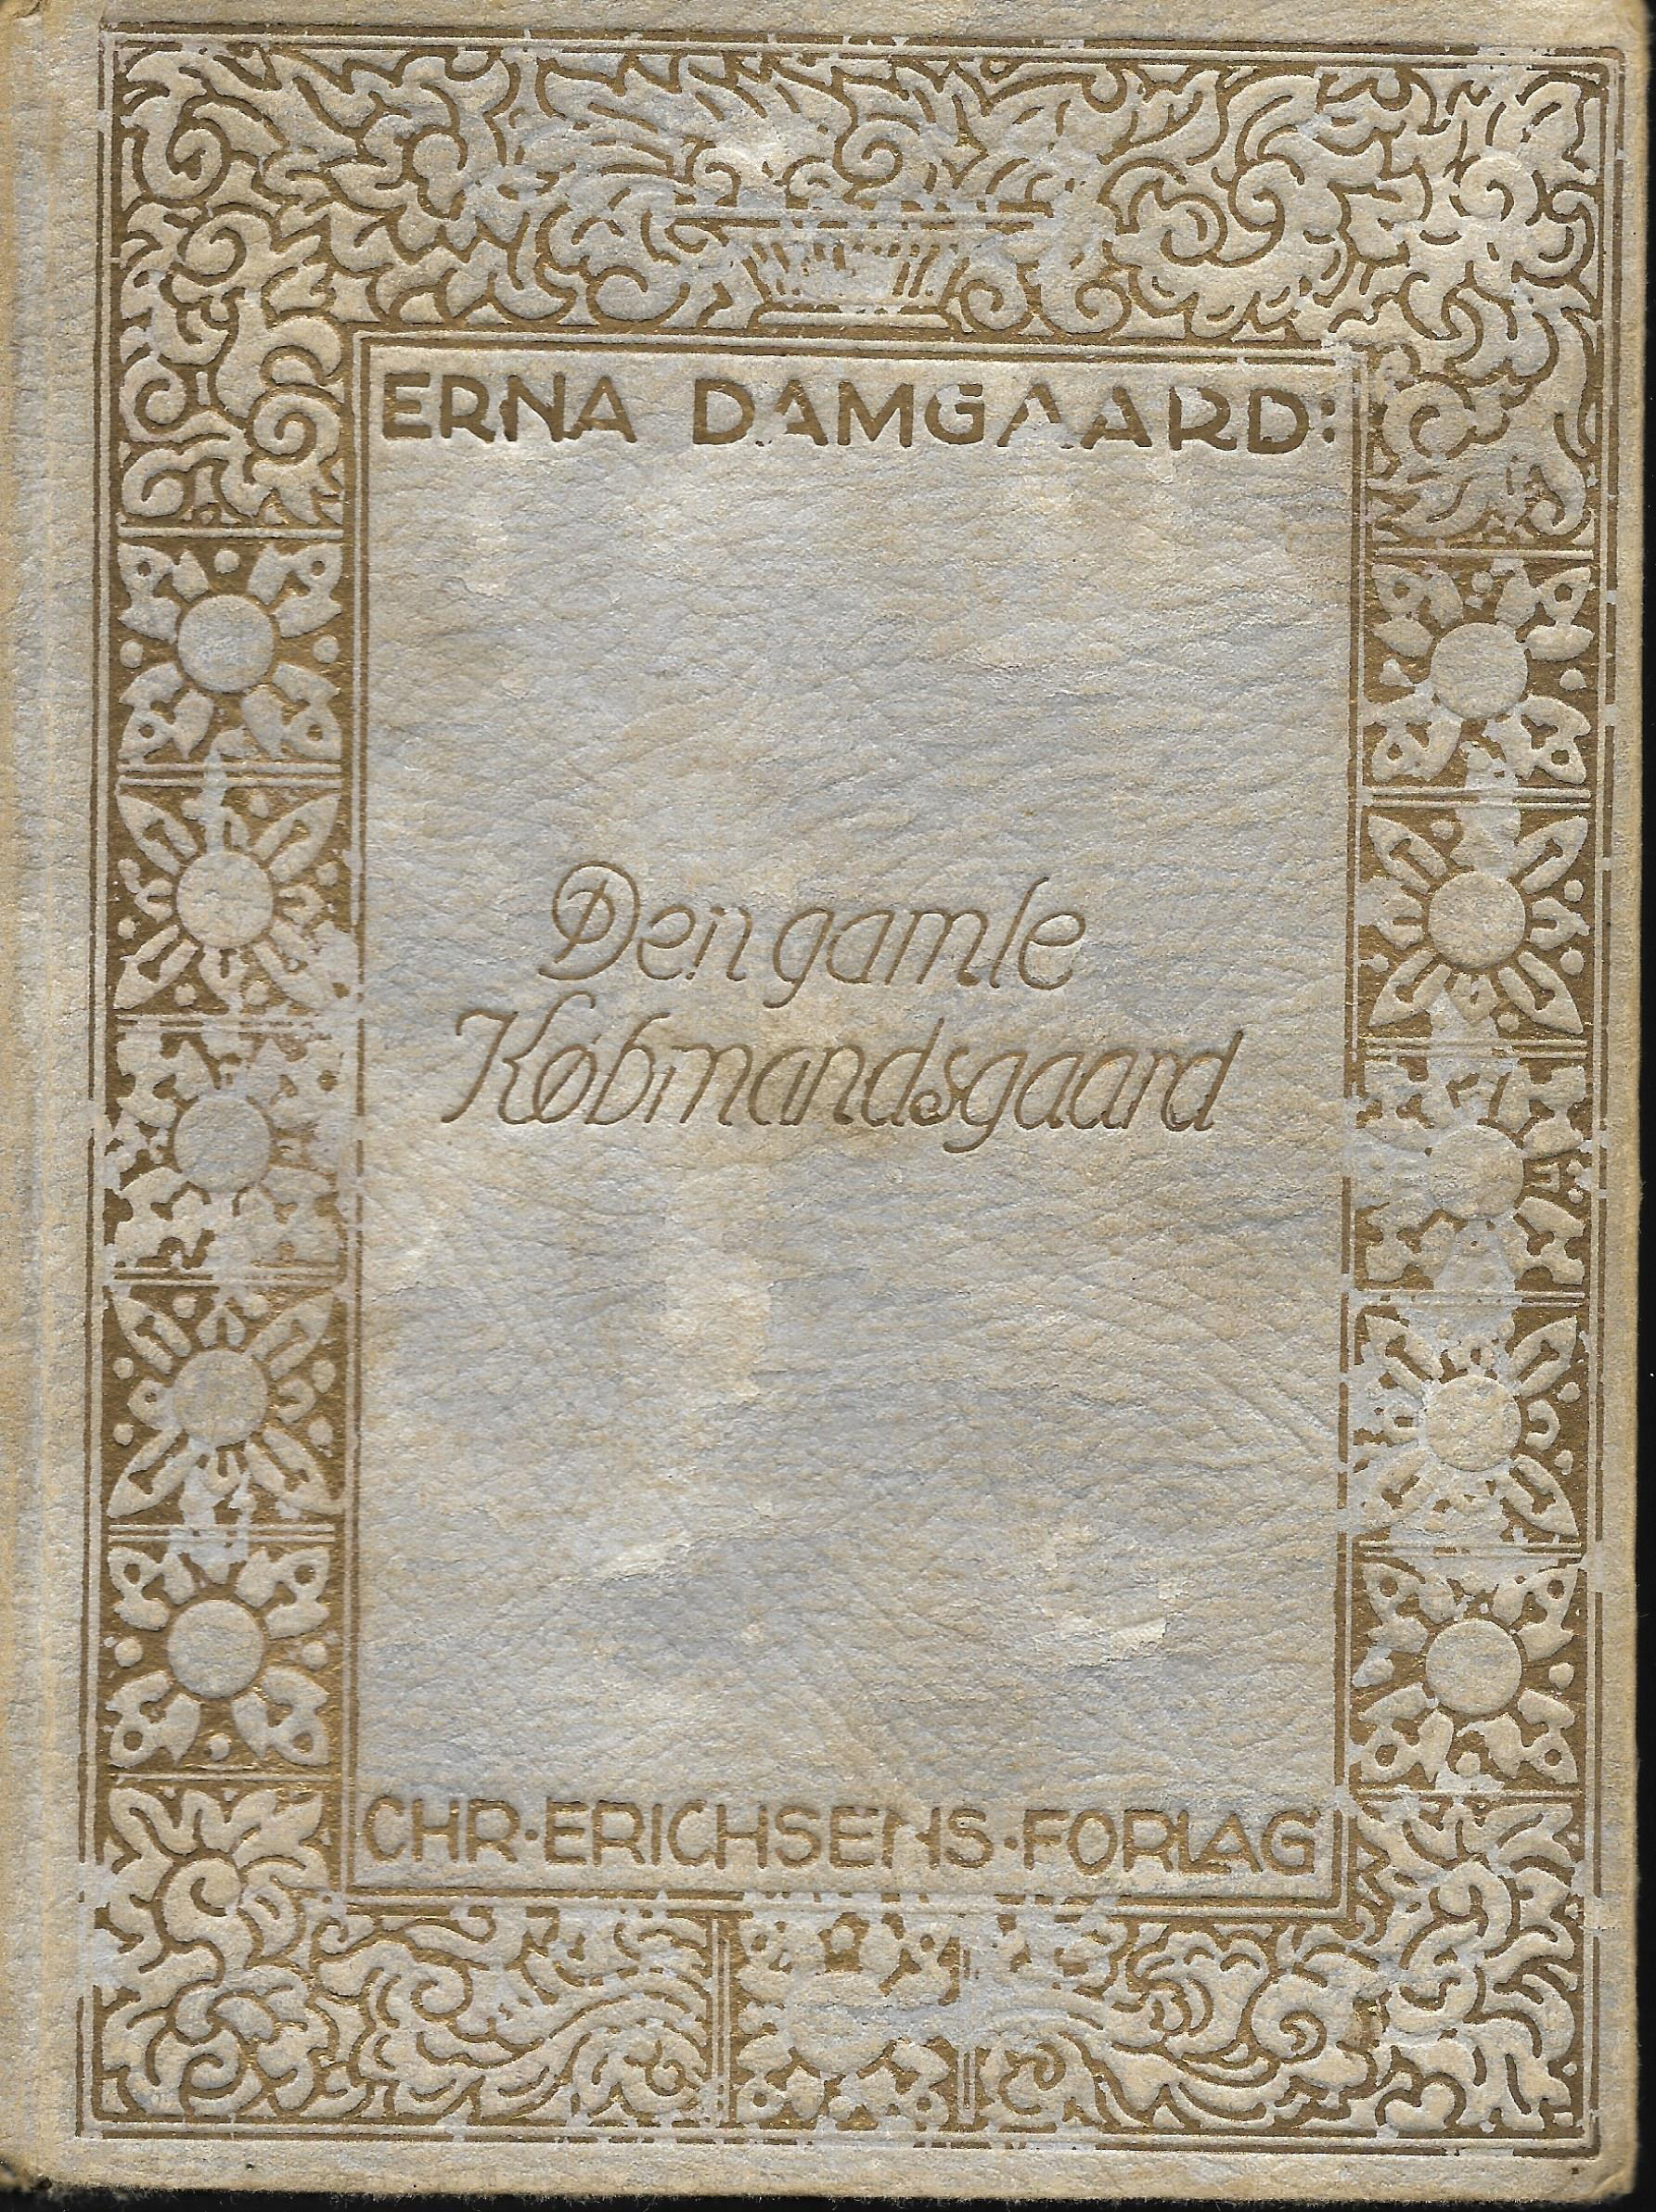 Den gamle Købmandsgaard - Erna Damgaard 1926